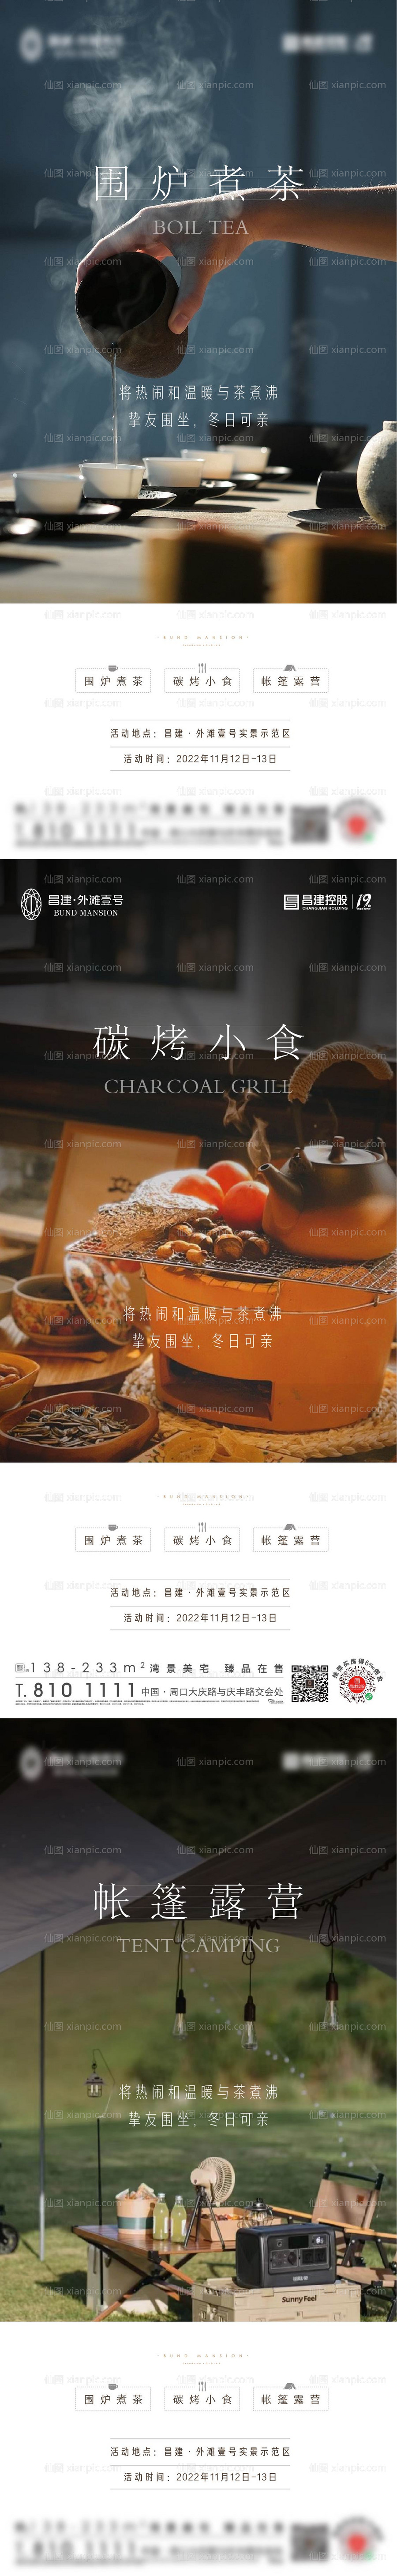 素材乐-围炉煮茶暖场活动系列海报